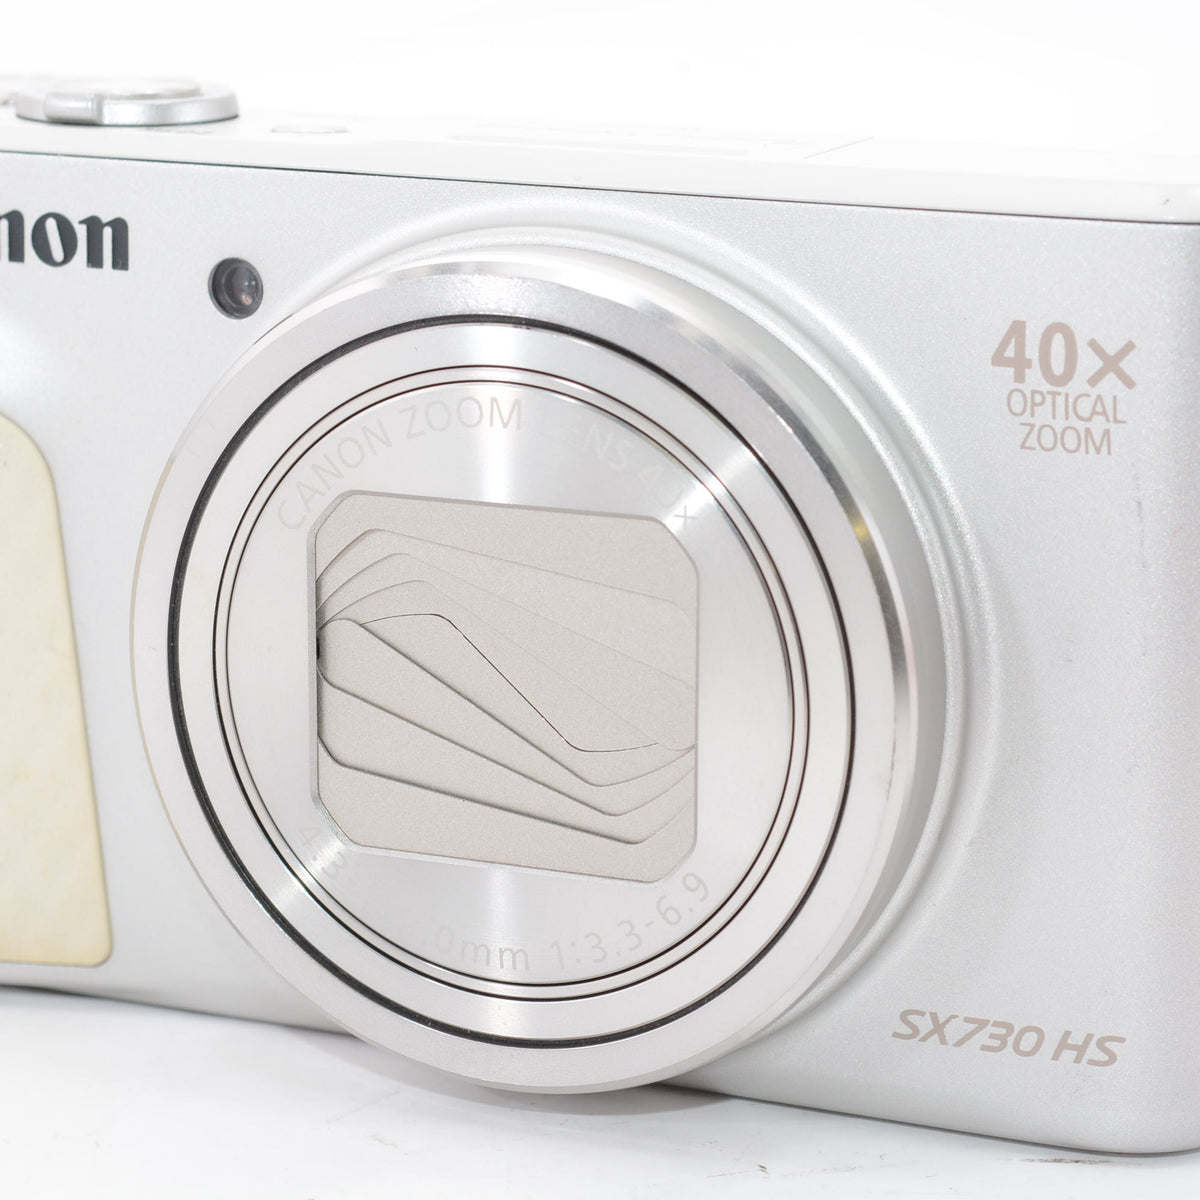 外観並級】Canon コンパクトデジタルカメラ PowerShot SX730 HS ...